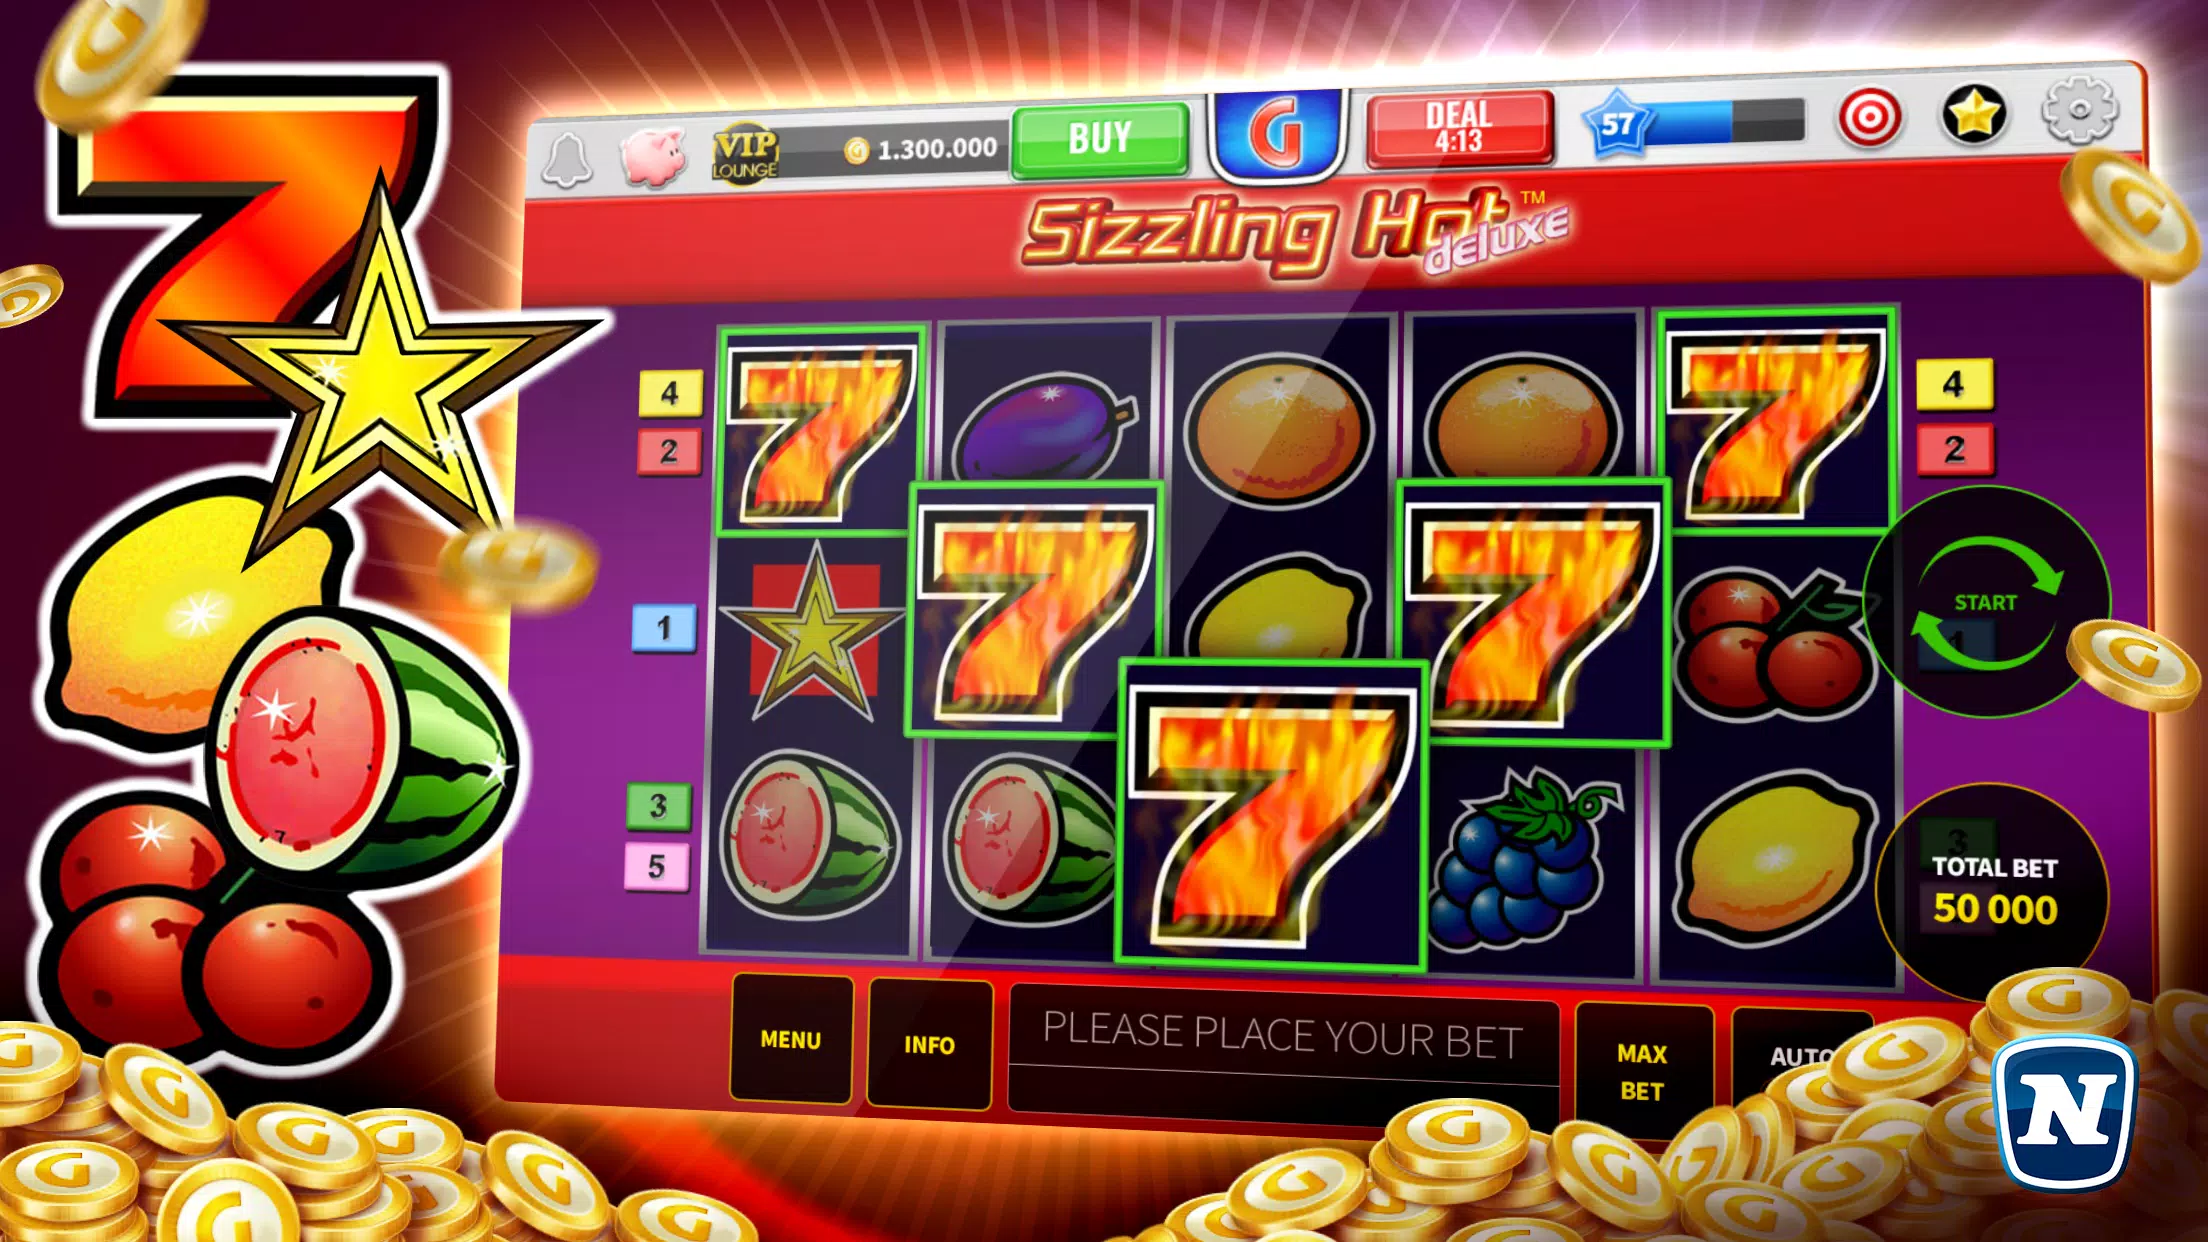 Casino online king club slots вулкан игровые автоматы без регистрации россия